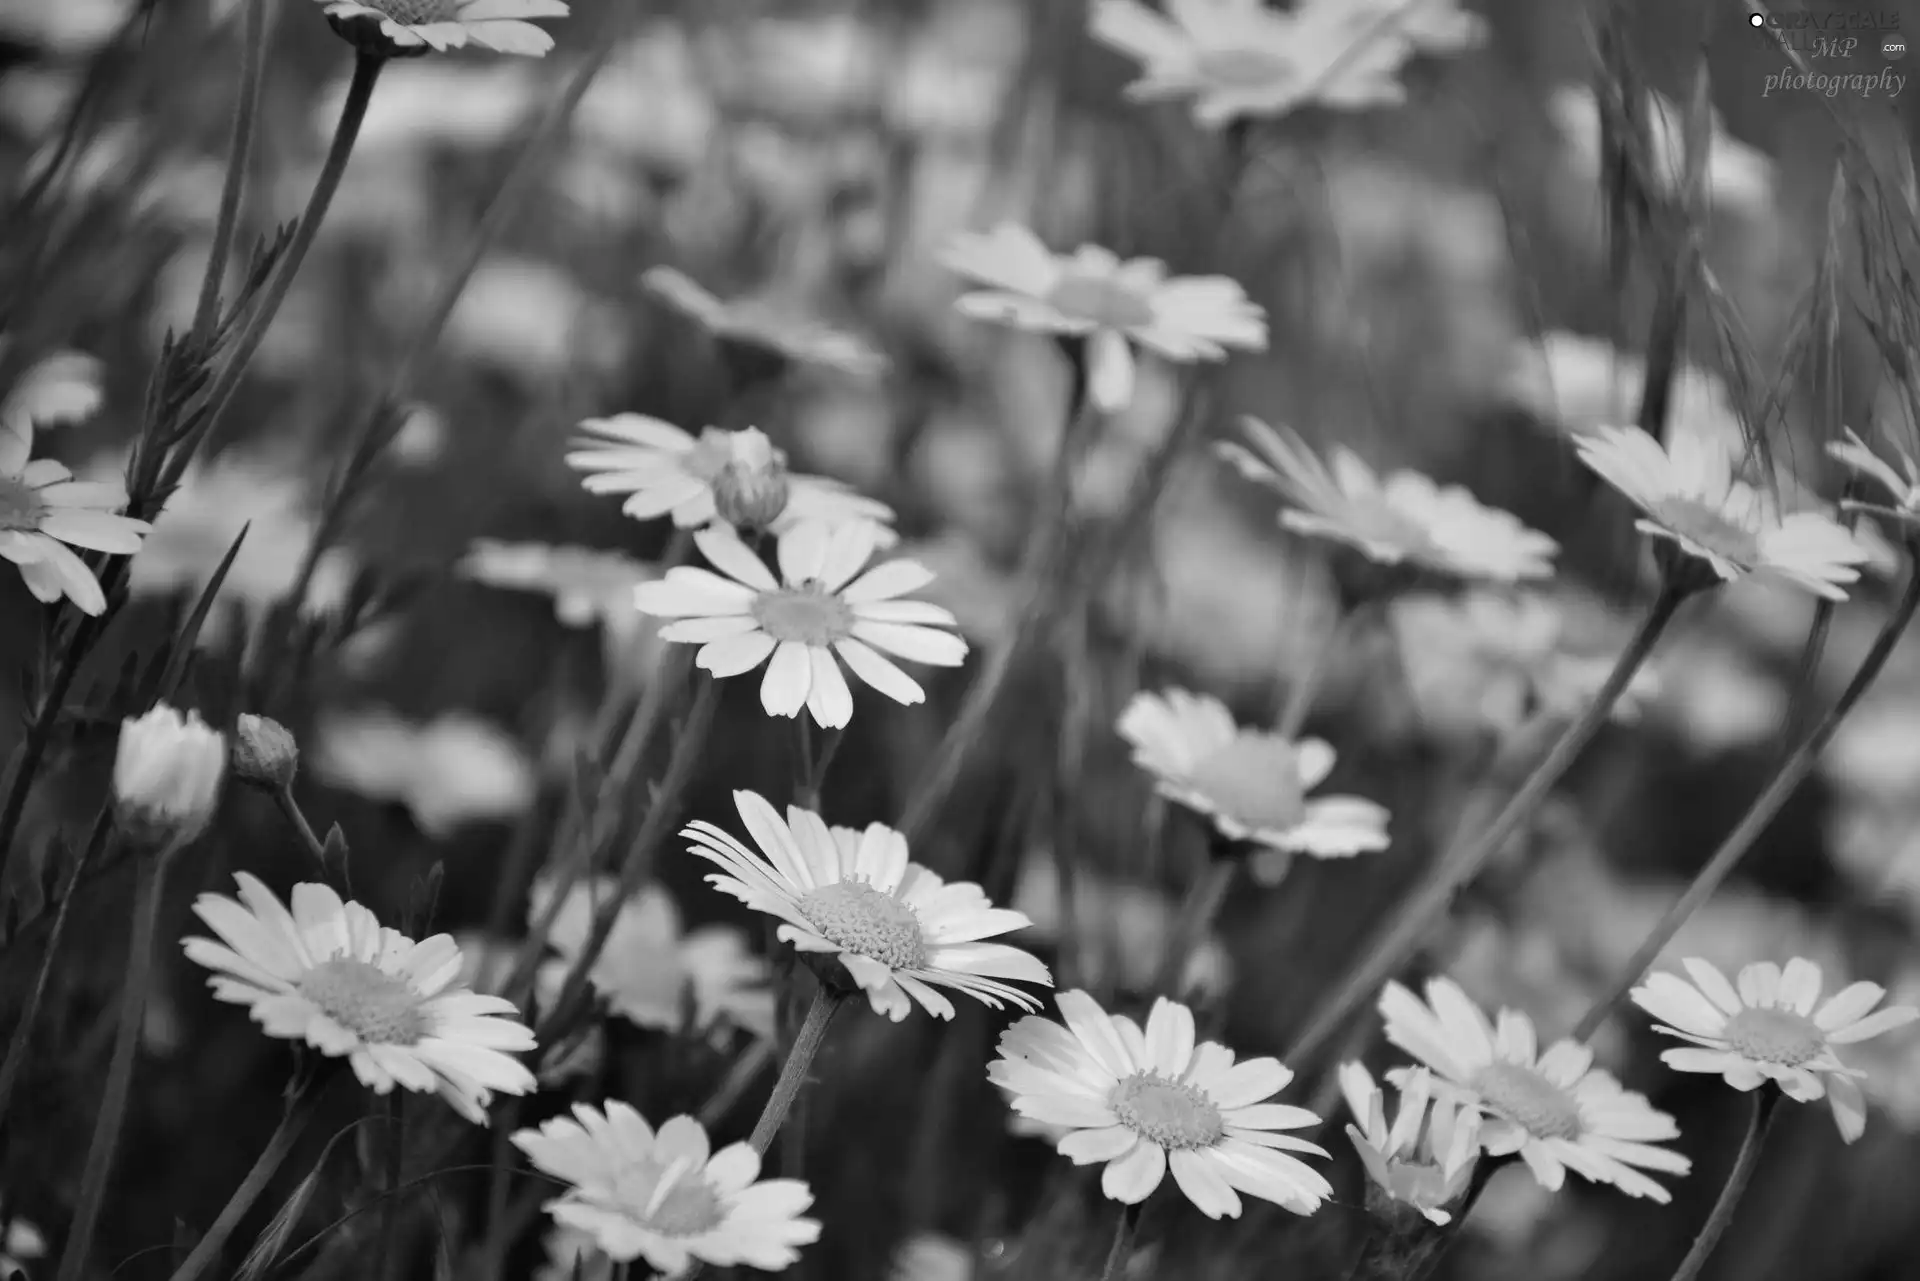 White, daisy